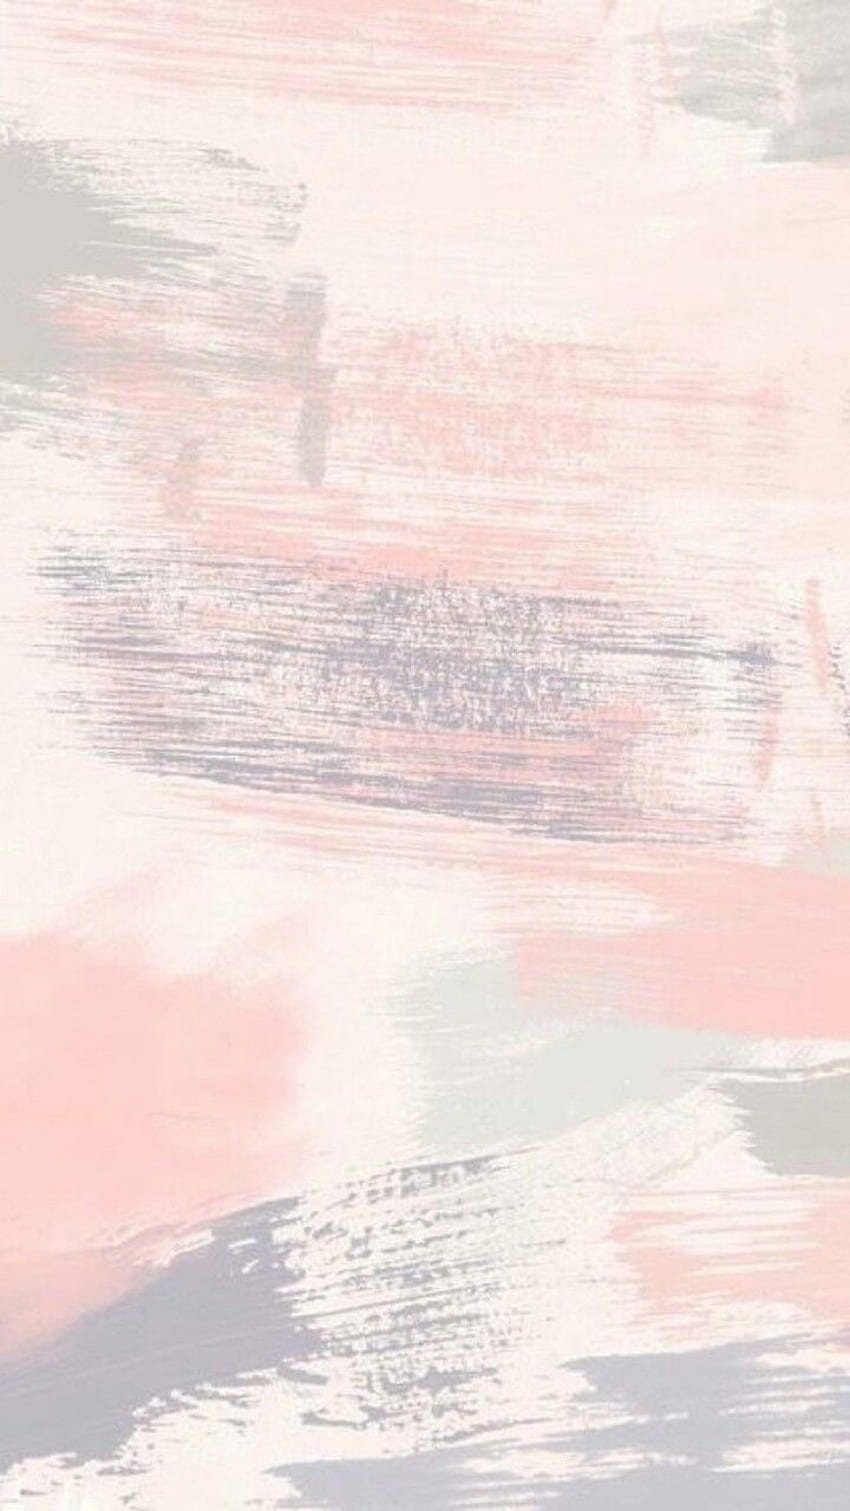 アイフォン。 空、ピンク、ライン、模様、雲、ベージュ、かわいいブラウン HD電話の壁紙